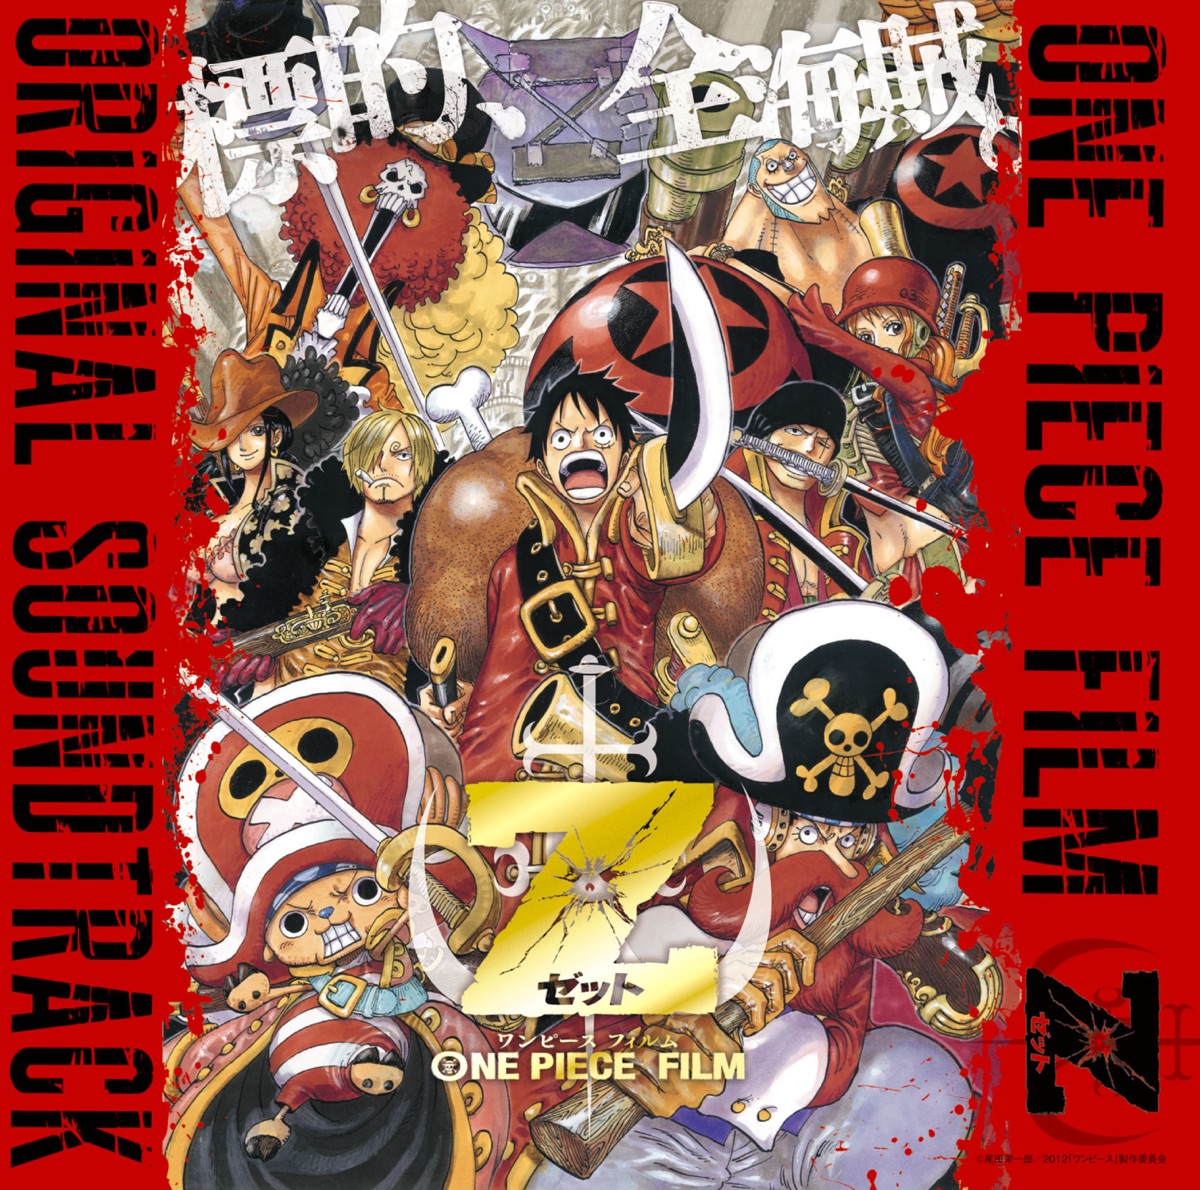 Onepiece Film Z (Original Sound Track) - Album by Various Artists